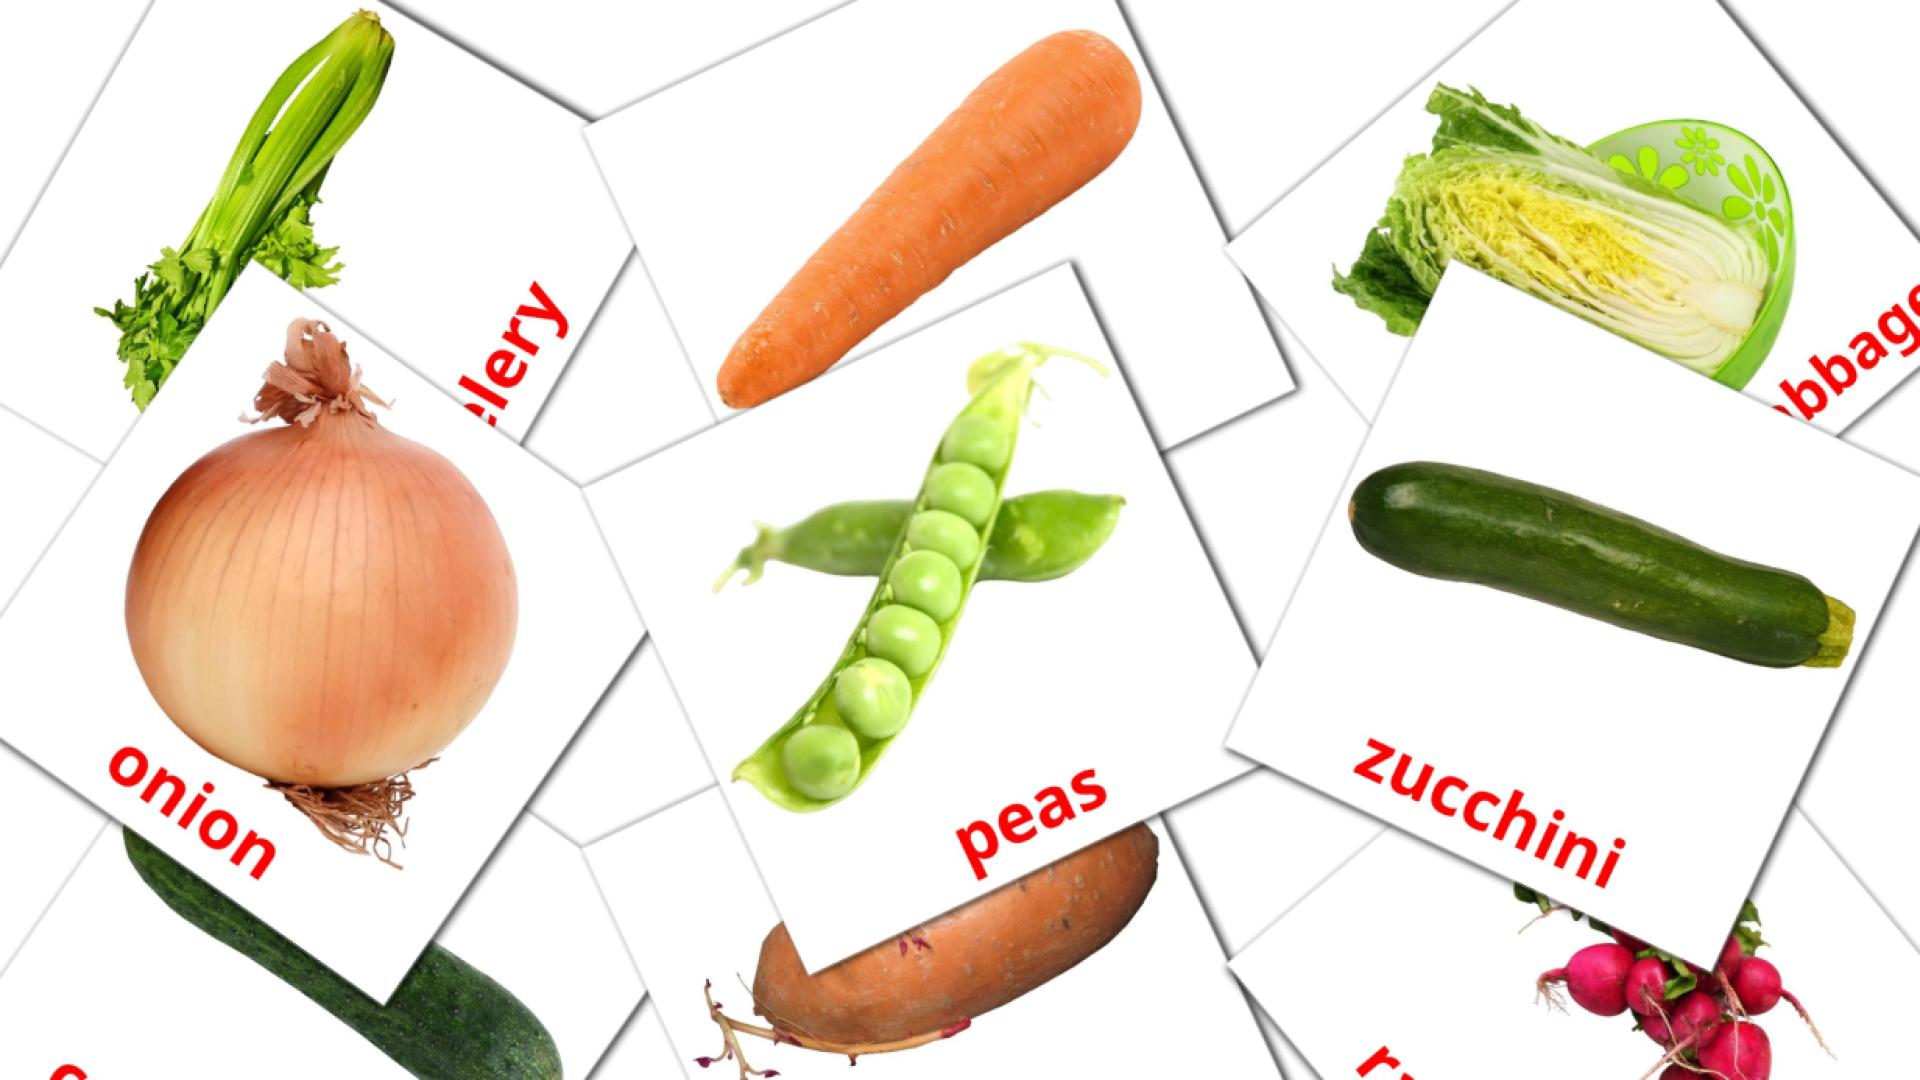 Bildkarten für Vegetables